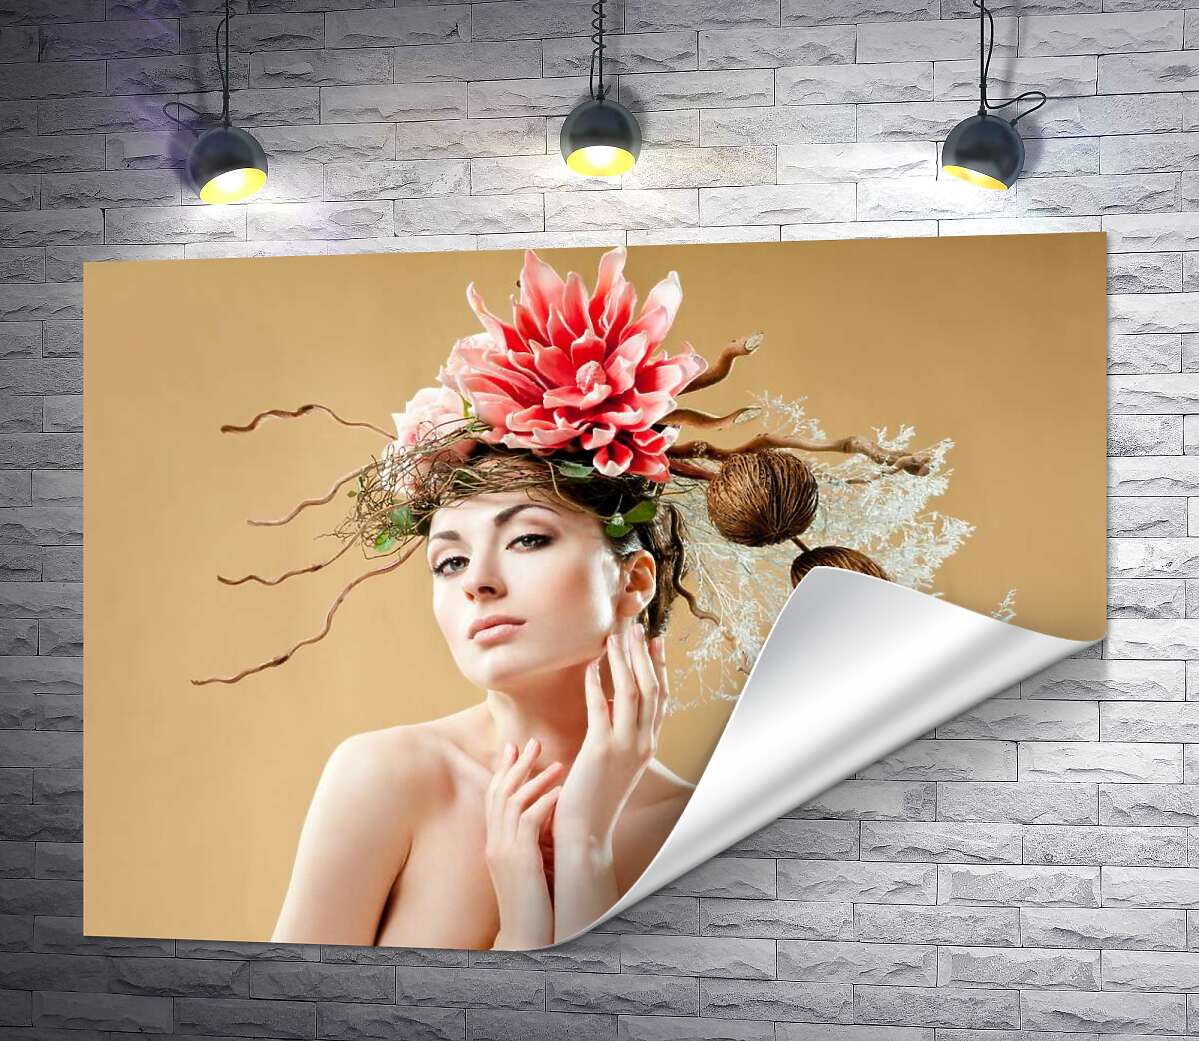 друк Бьюті портрет дівчини з квітковою прикрасою на голові